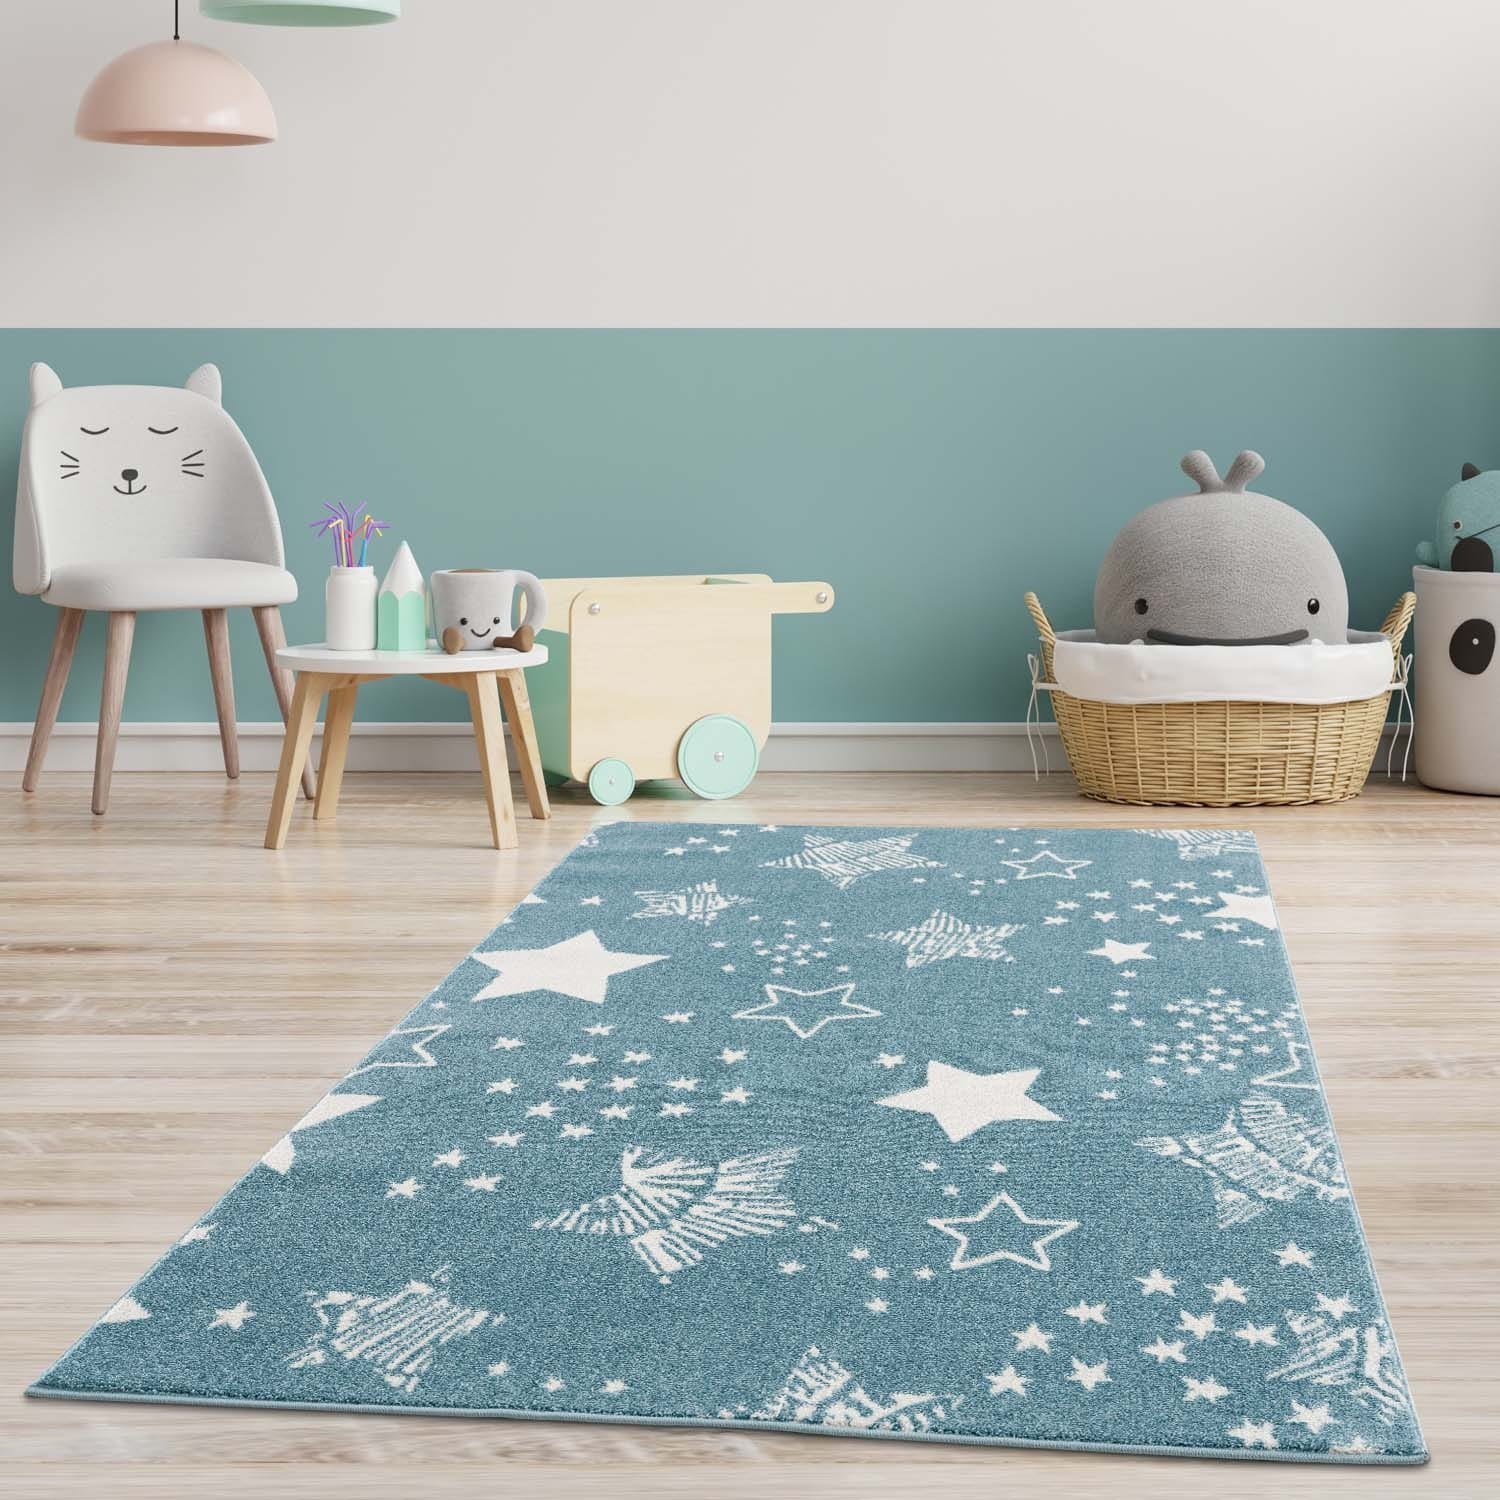 Originální modrý koberec do dětského pokoje STARS